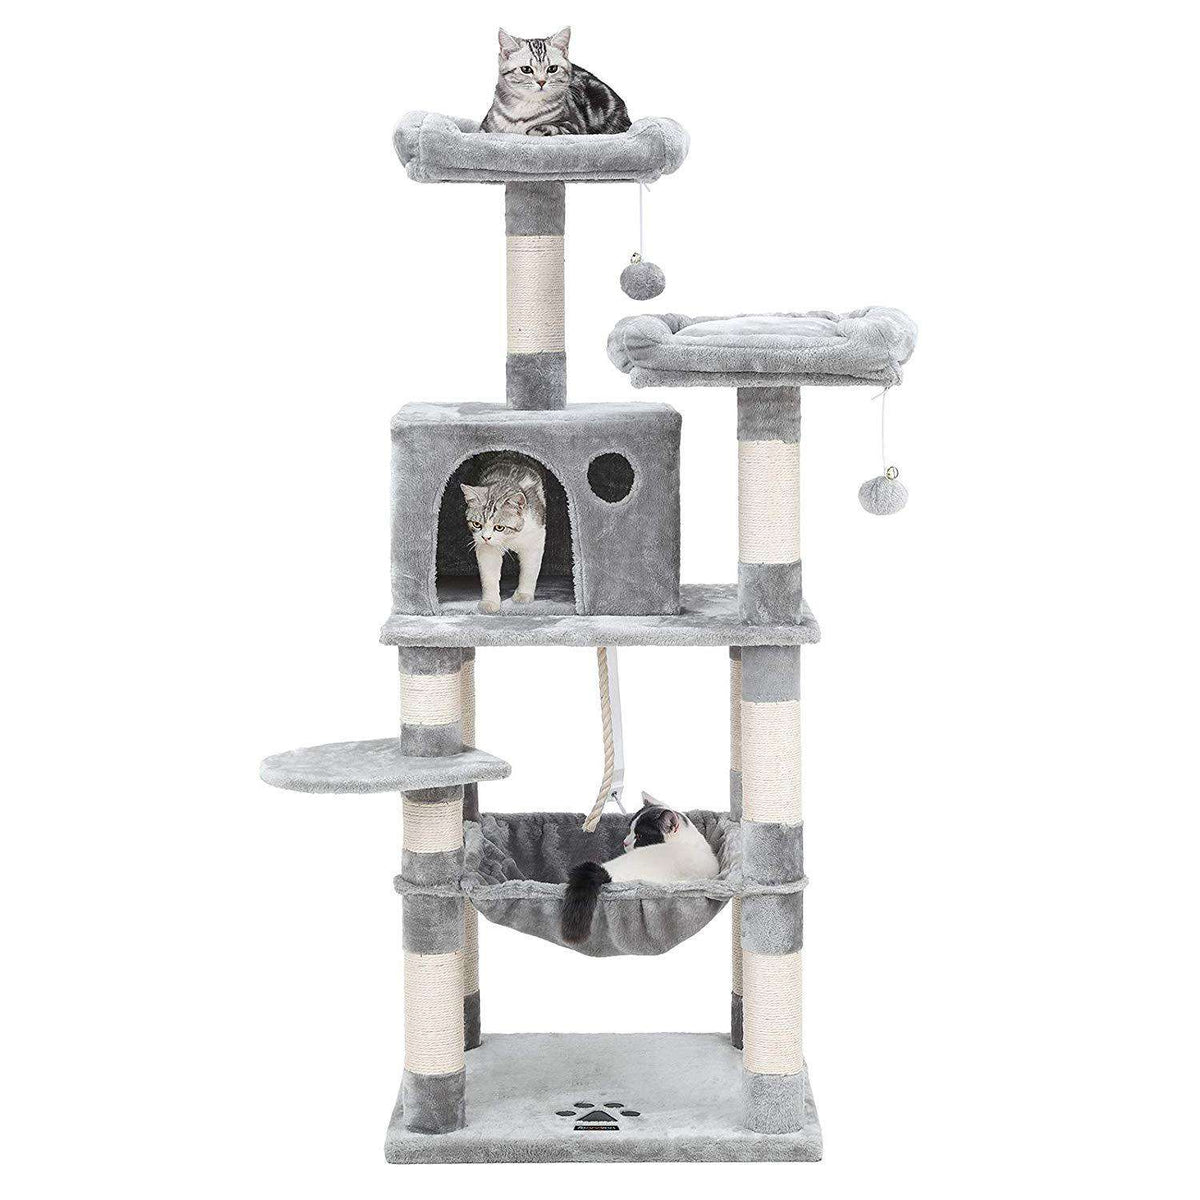 erwt Afhankelijk Condenseren Nancy's Cathlamet Kattenboom - Krabpaal - Klimboom voor katten - Kat Toren  met grot - Lichtgrijs